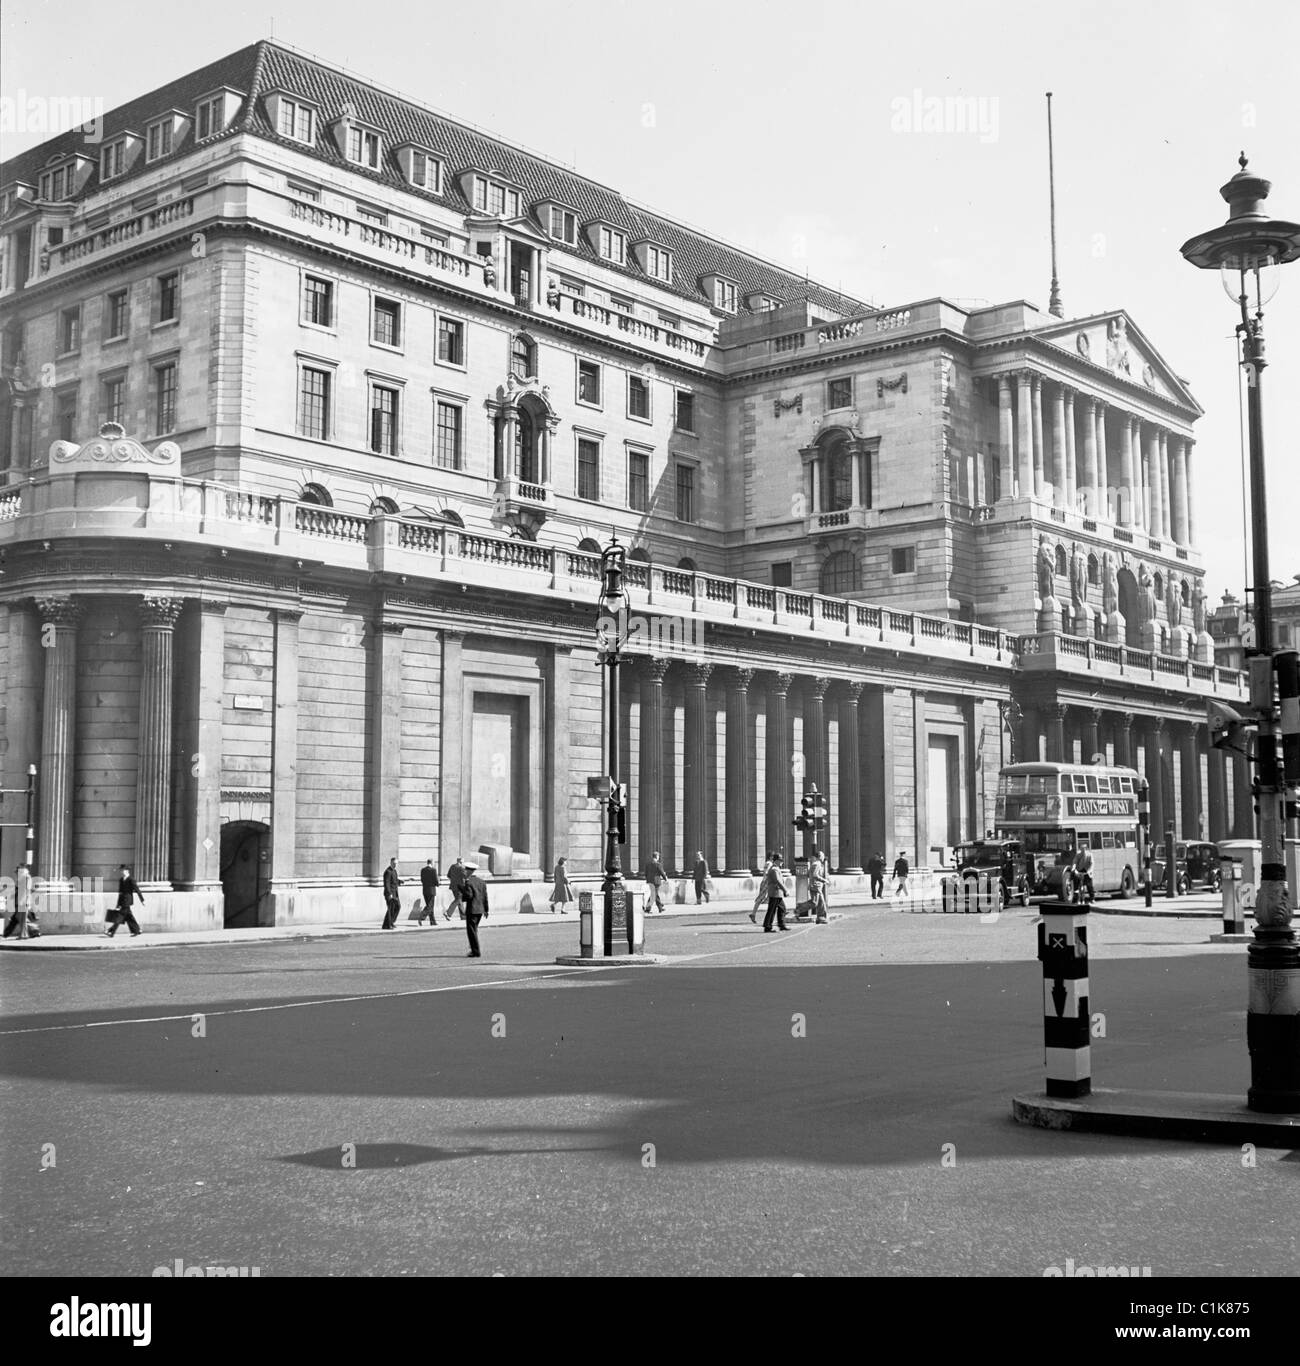 1950s, el exterior del Banco de Inglaterra en Threadneedle Street, City of London, con personas y vehículos del día, incluyendo un autobús routemaster. Foto de stock